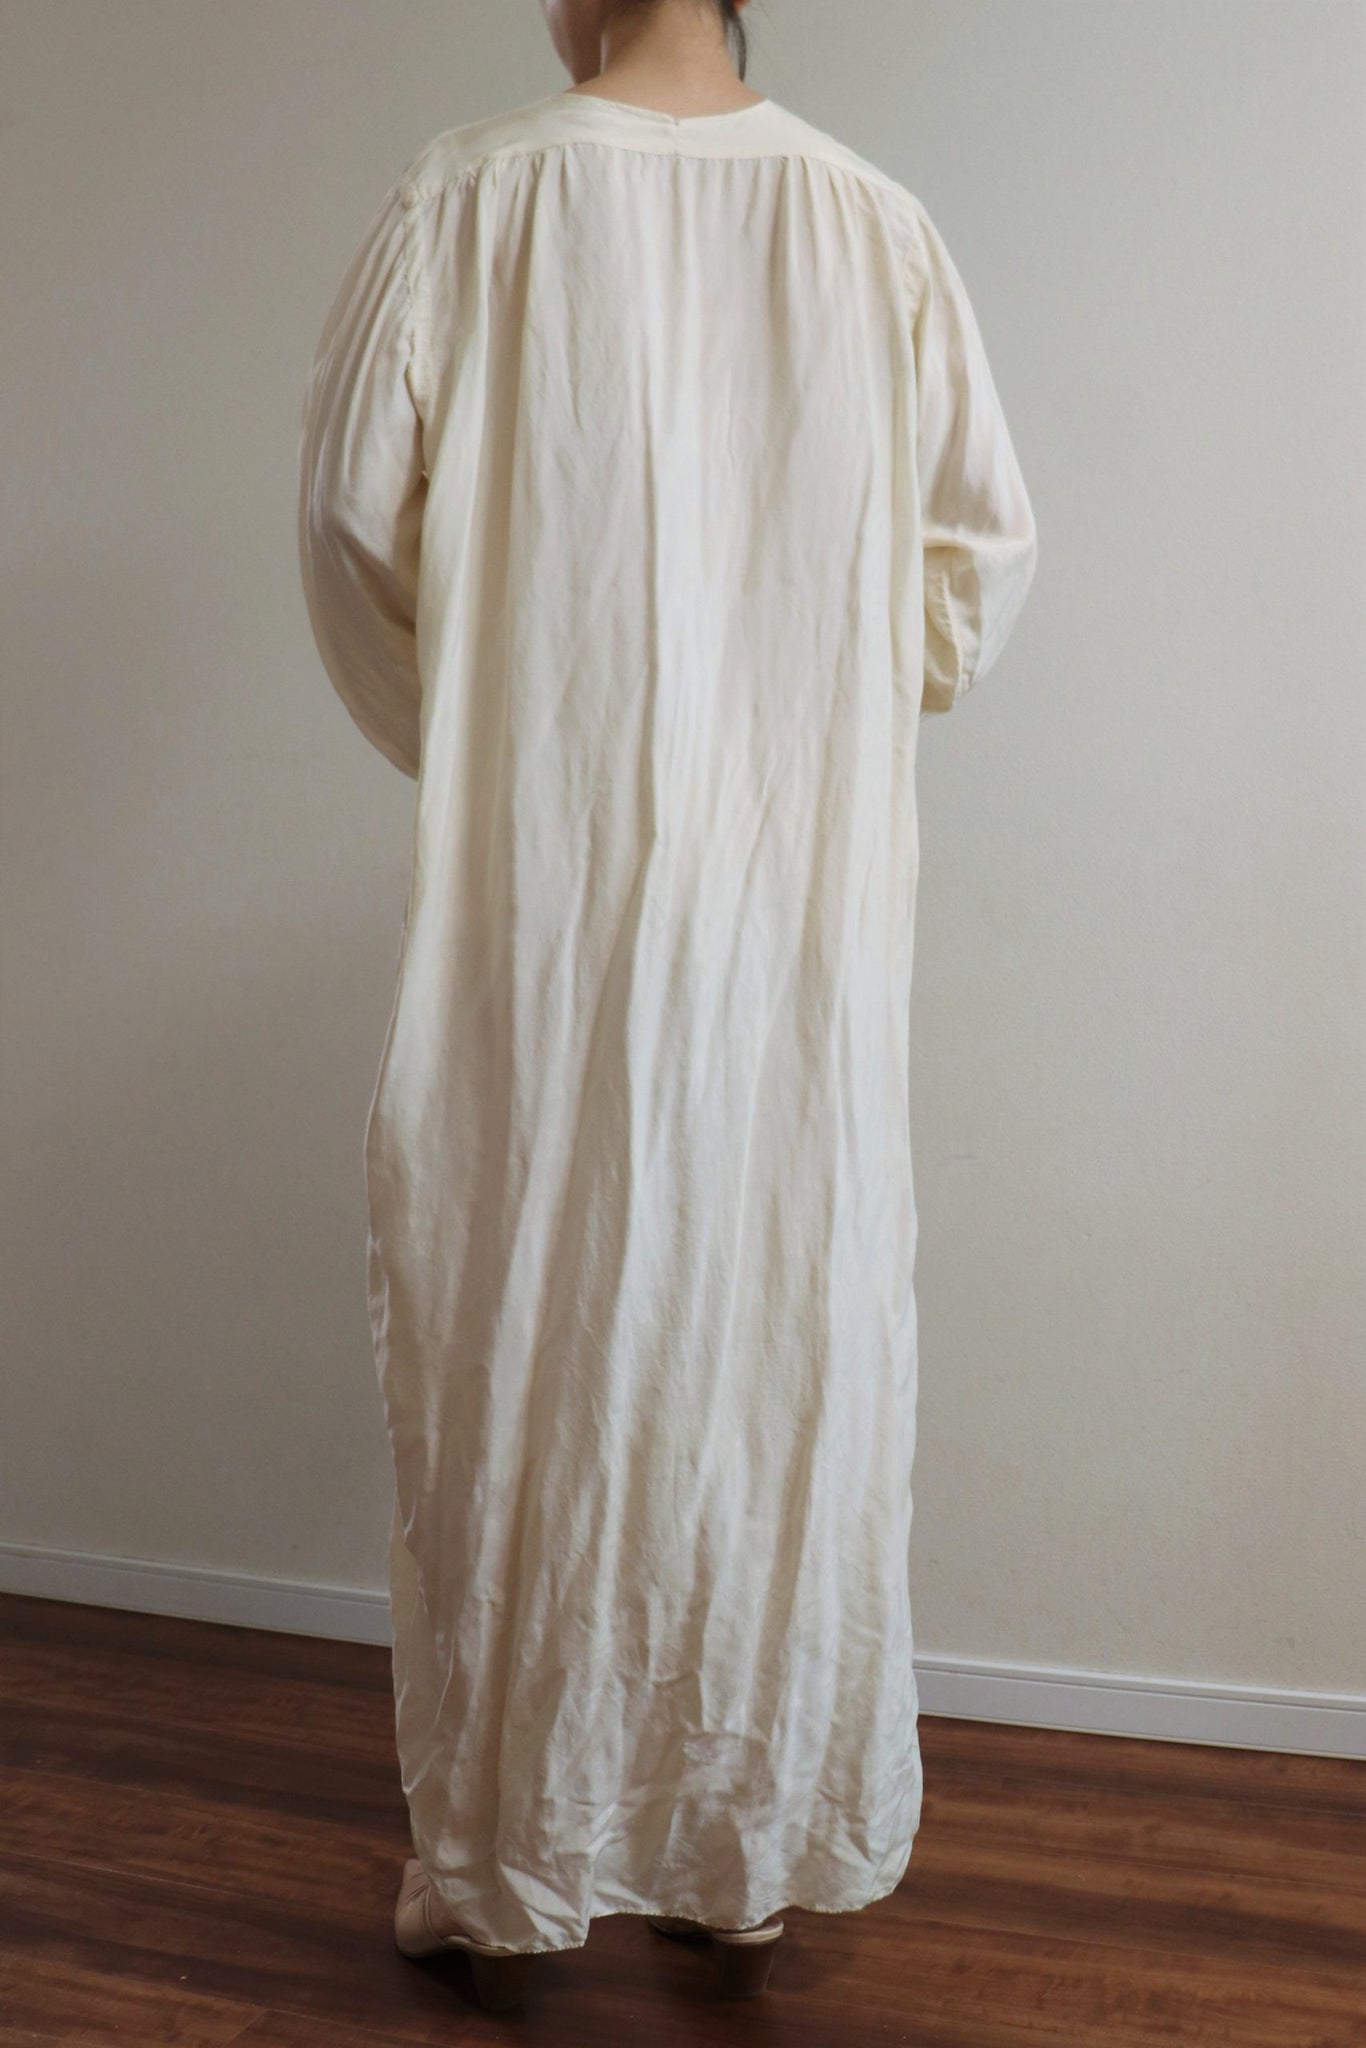 19th B. Altman Silk Night Dress